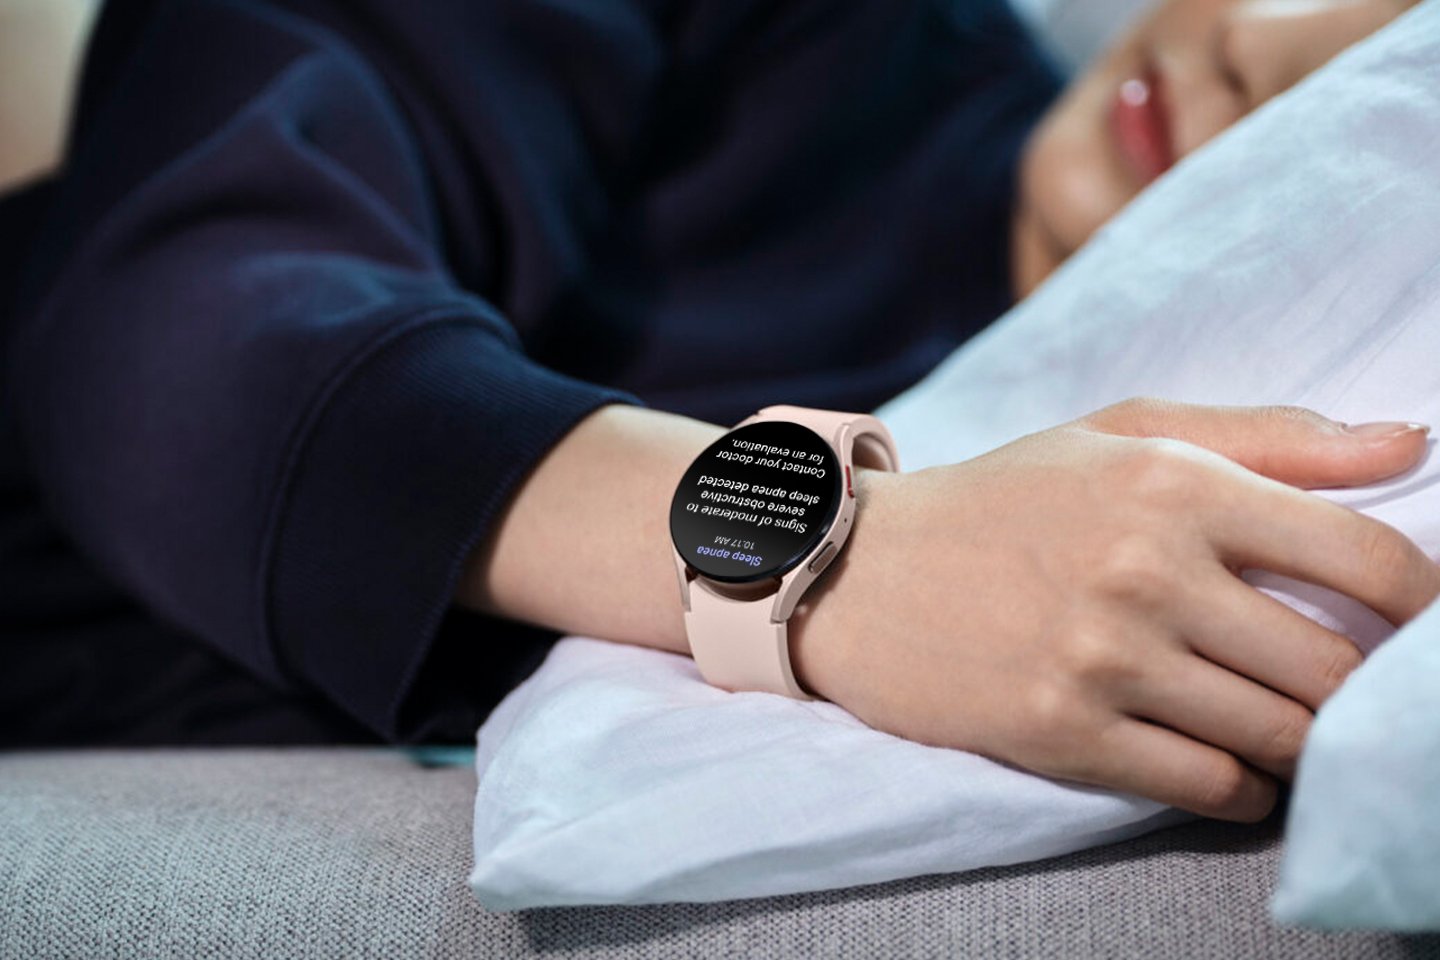 Samsung slo Apple i å få FDA-godkjenning for funksjonen for deteksjon av søvnapné på Galaxy Watch